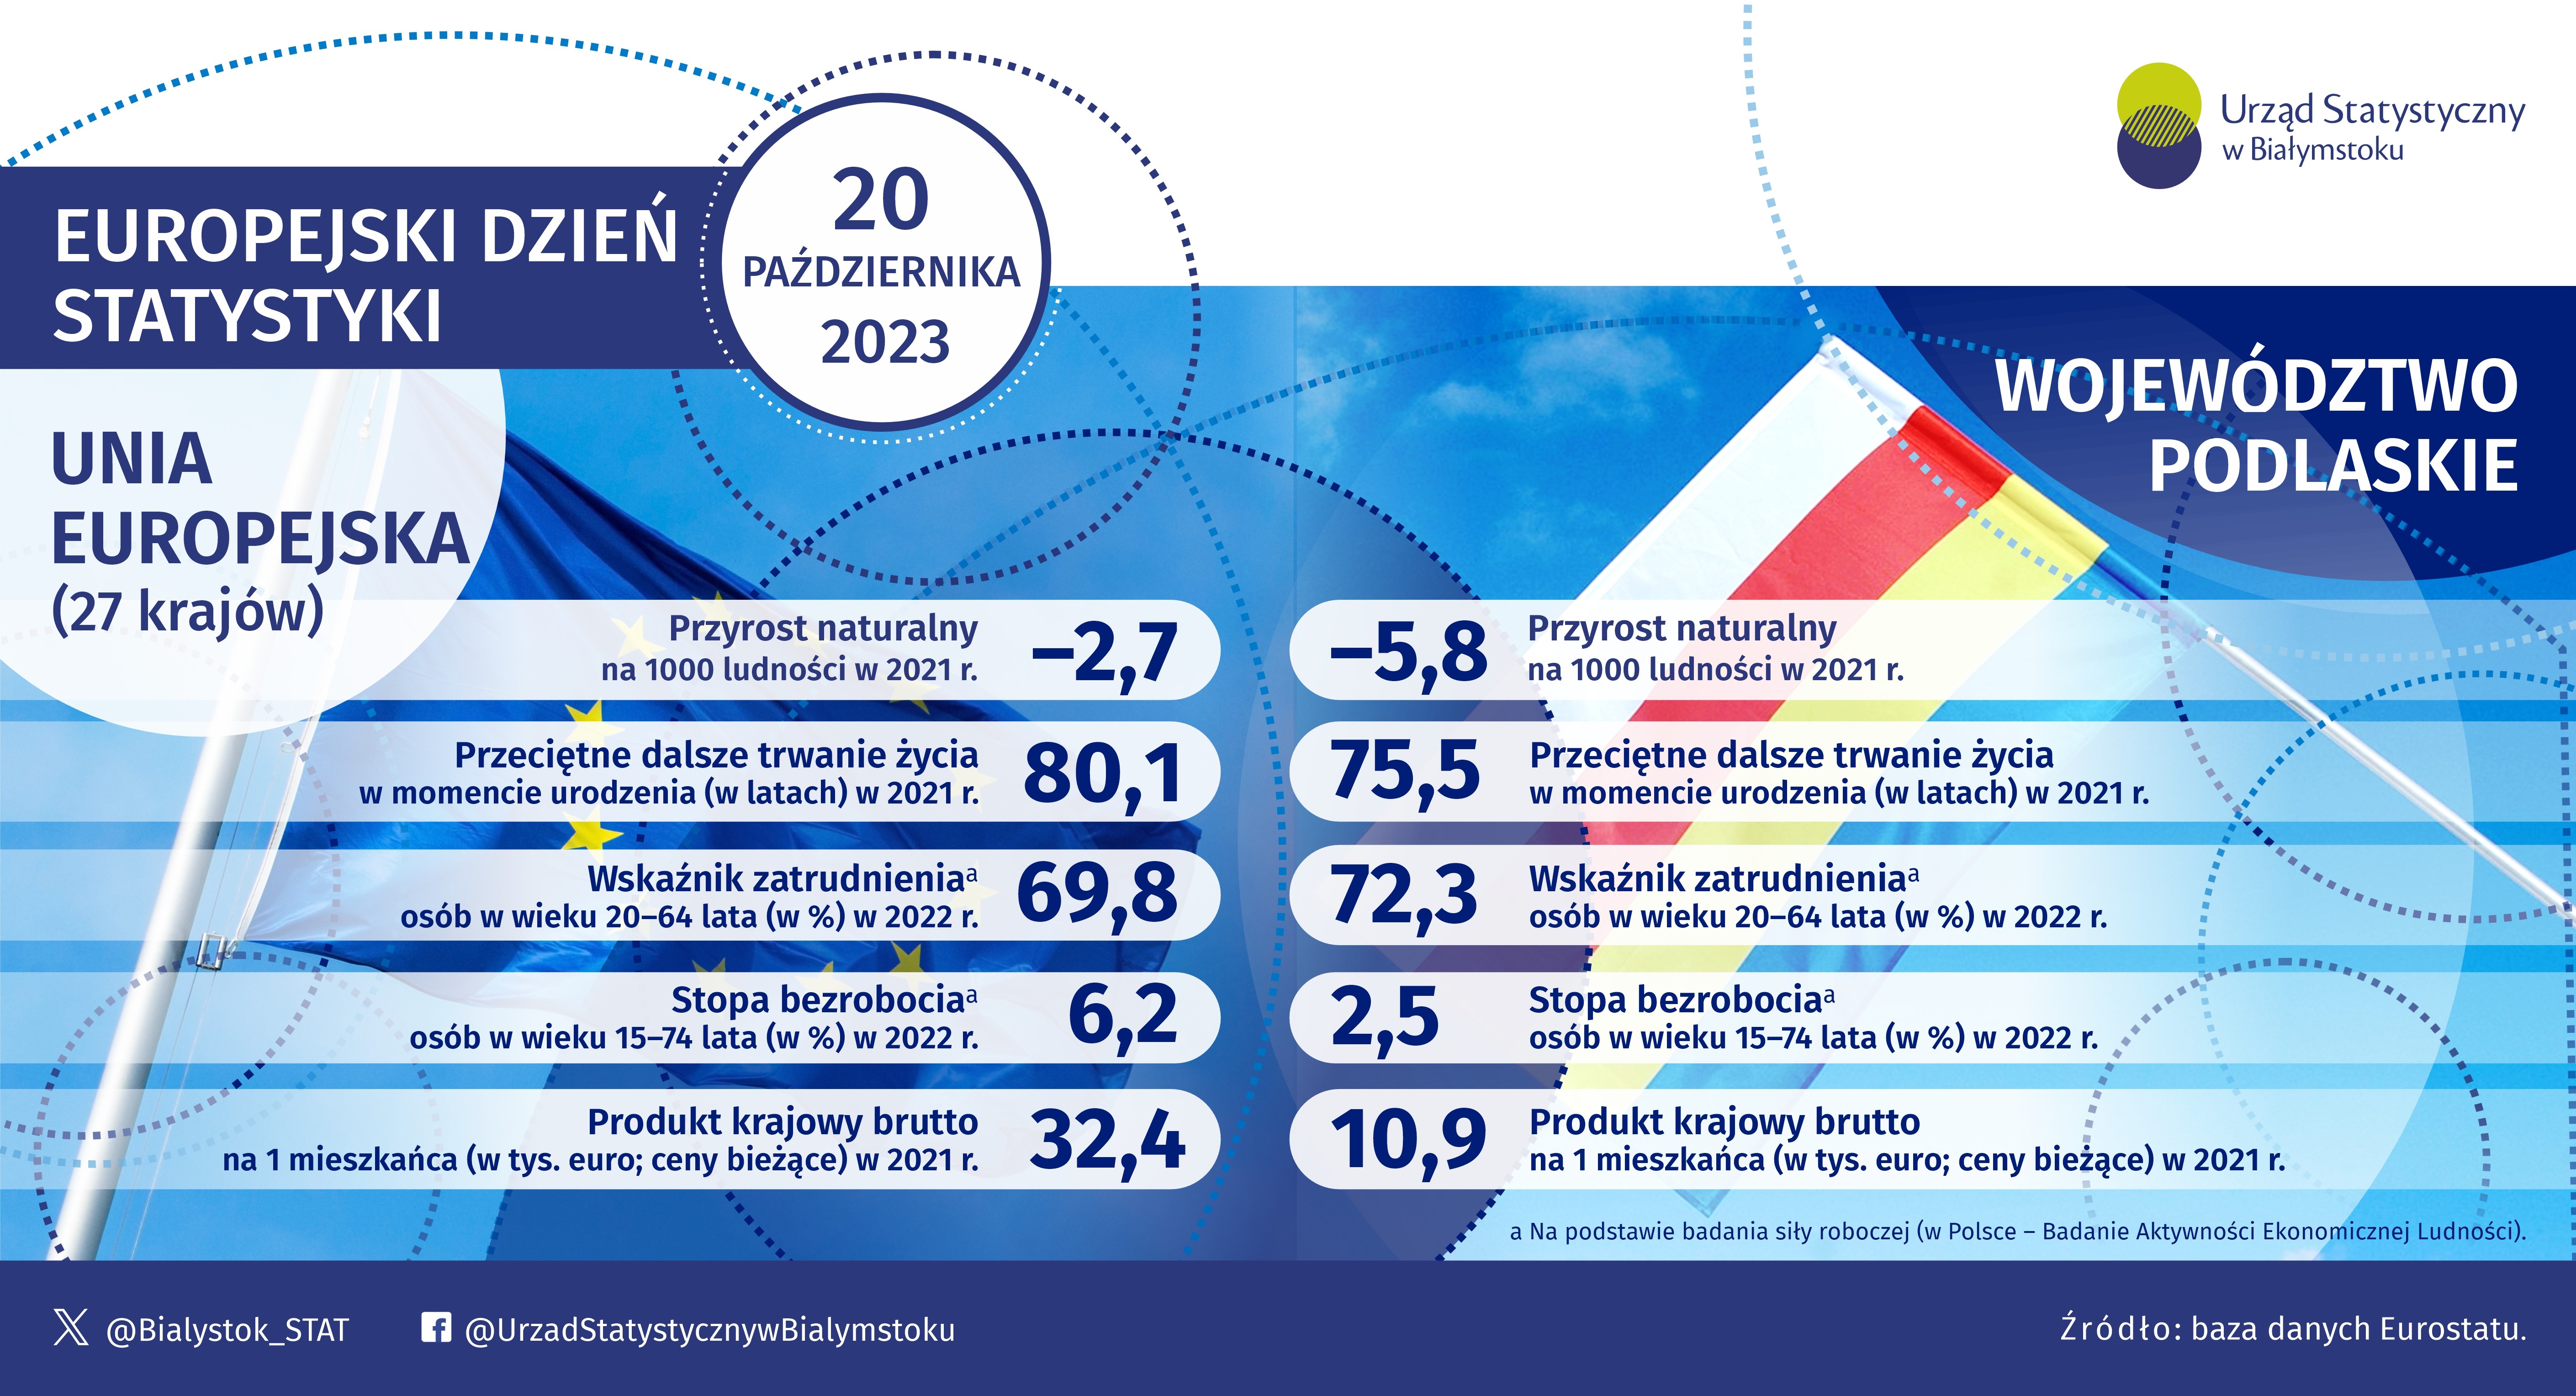 Infografika, na której widoczne są podstawowe informacje z zakresu demografii, rynku pracy oraz PKB dla województwa podlaskiego oraz Unii Europejskiej